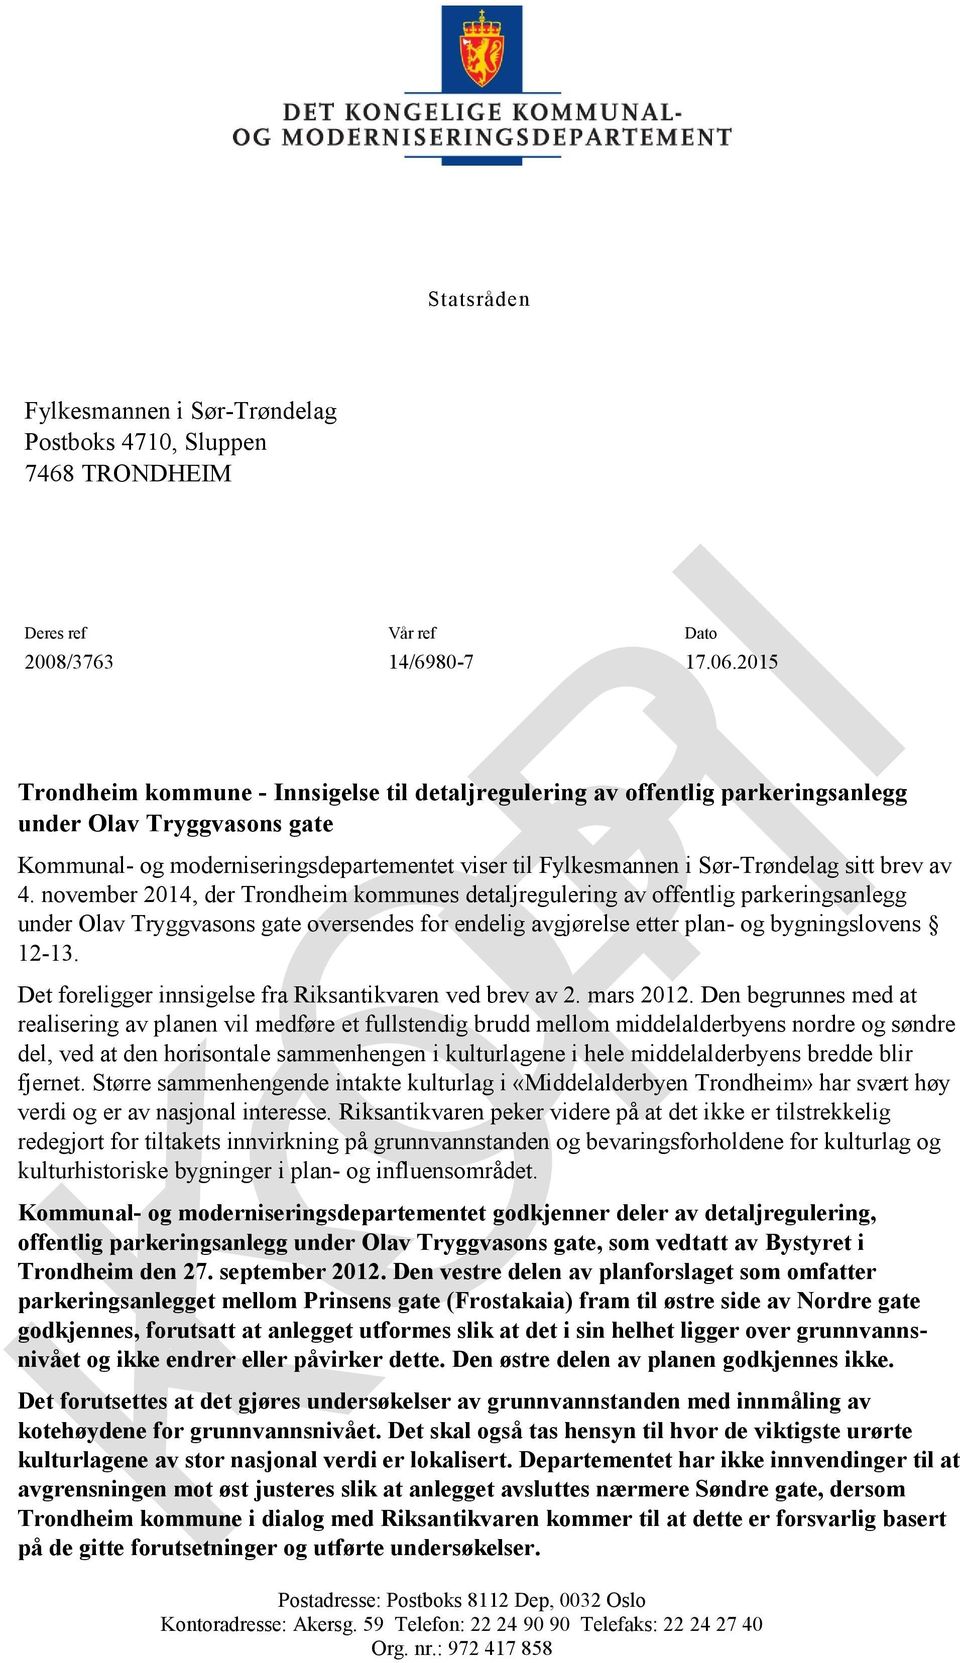 brev av 4. november 2014, der Trondheim kommunes detaljregulering av offentlig parkeringsanlegg under Olav Tryggvasons gate oversendes for endelig avgjørelse etter plan- og bygningslovens 12-13.